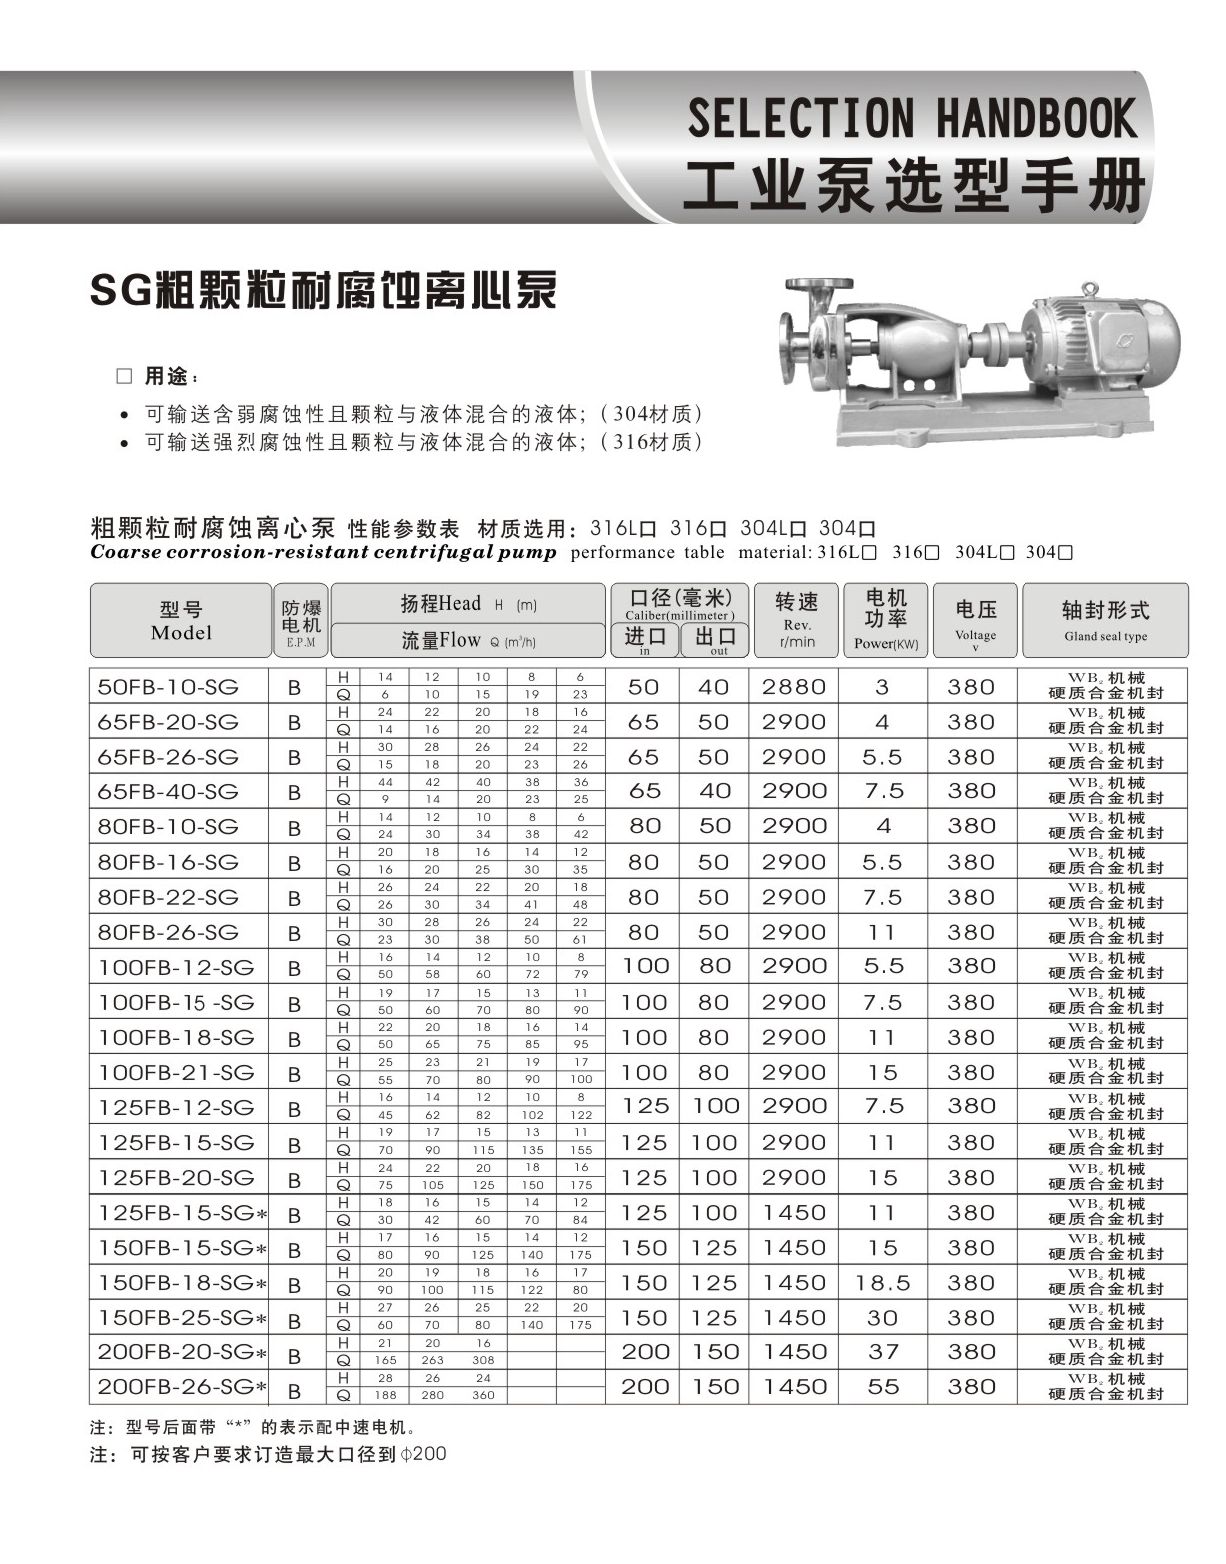 羊城水泵|粗颗粒耐腐蚀离心泵|广州羊城水泵厂|羊城泵业|广州不锈钢水泵